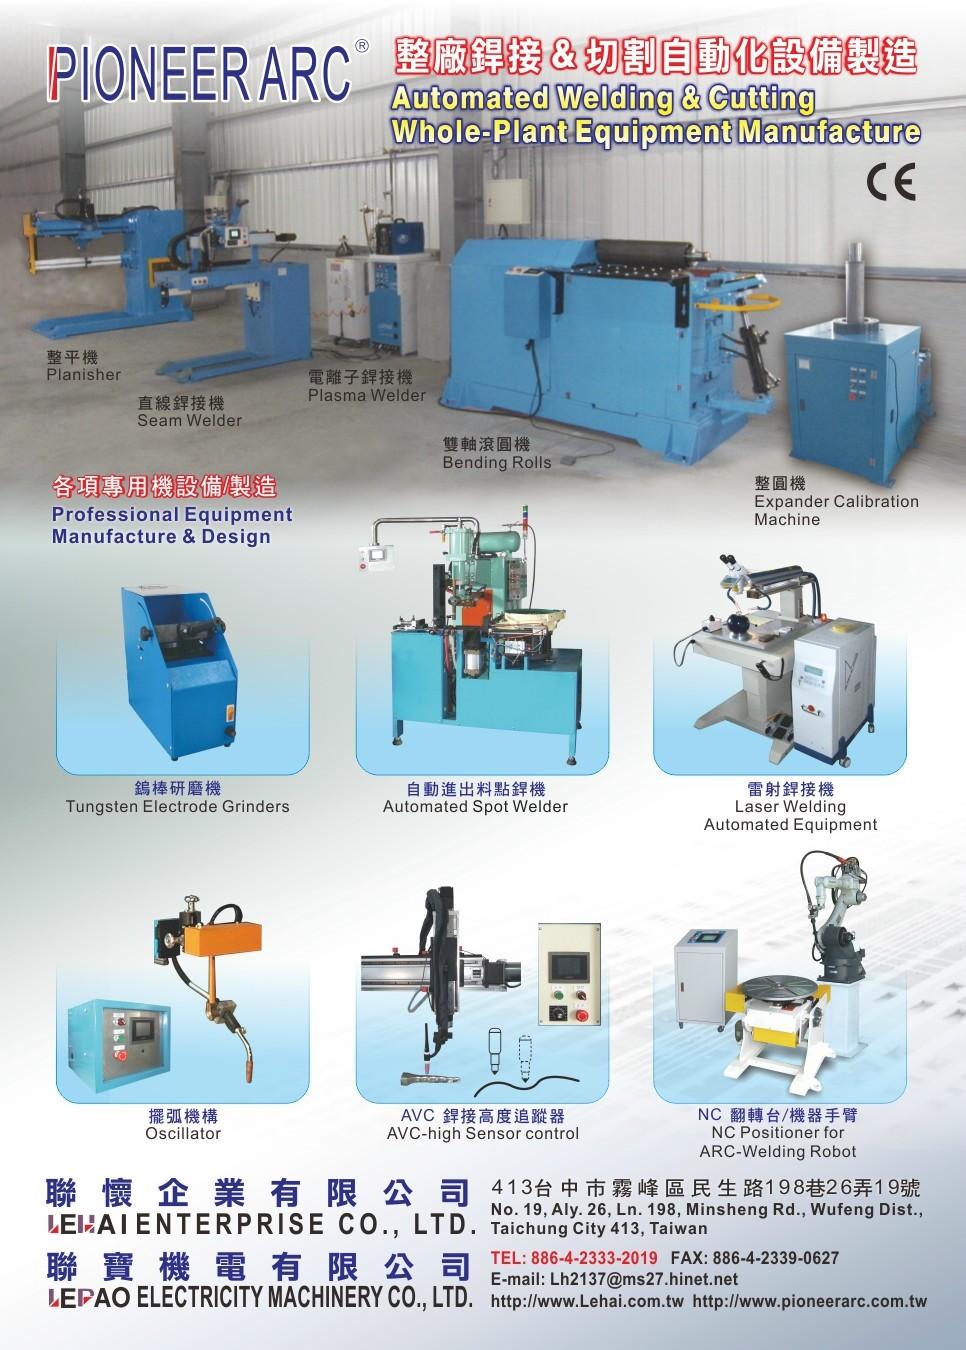 Professional Equipment Manufacture & Design-各項專用機設備製造(Professional Equipment Manufacture & Design)